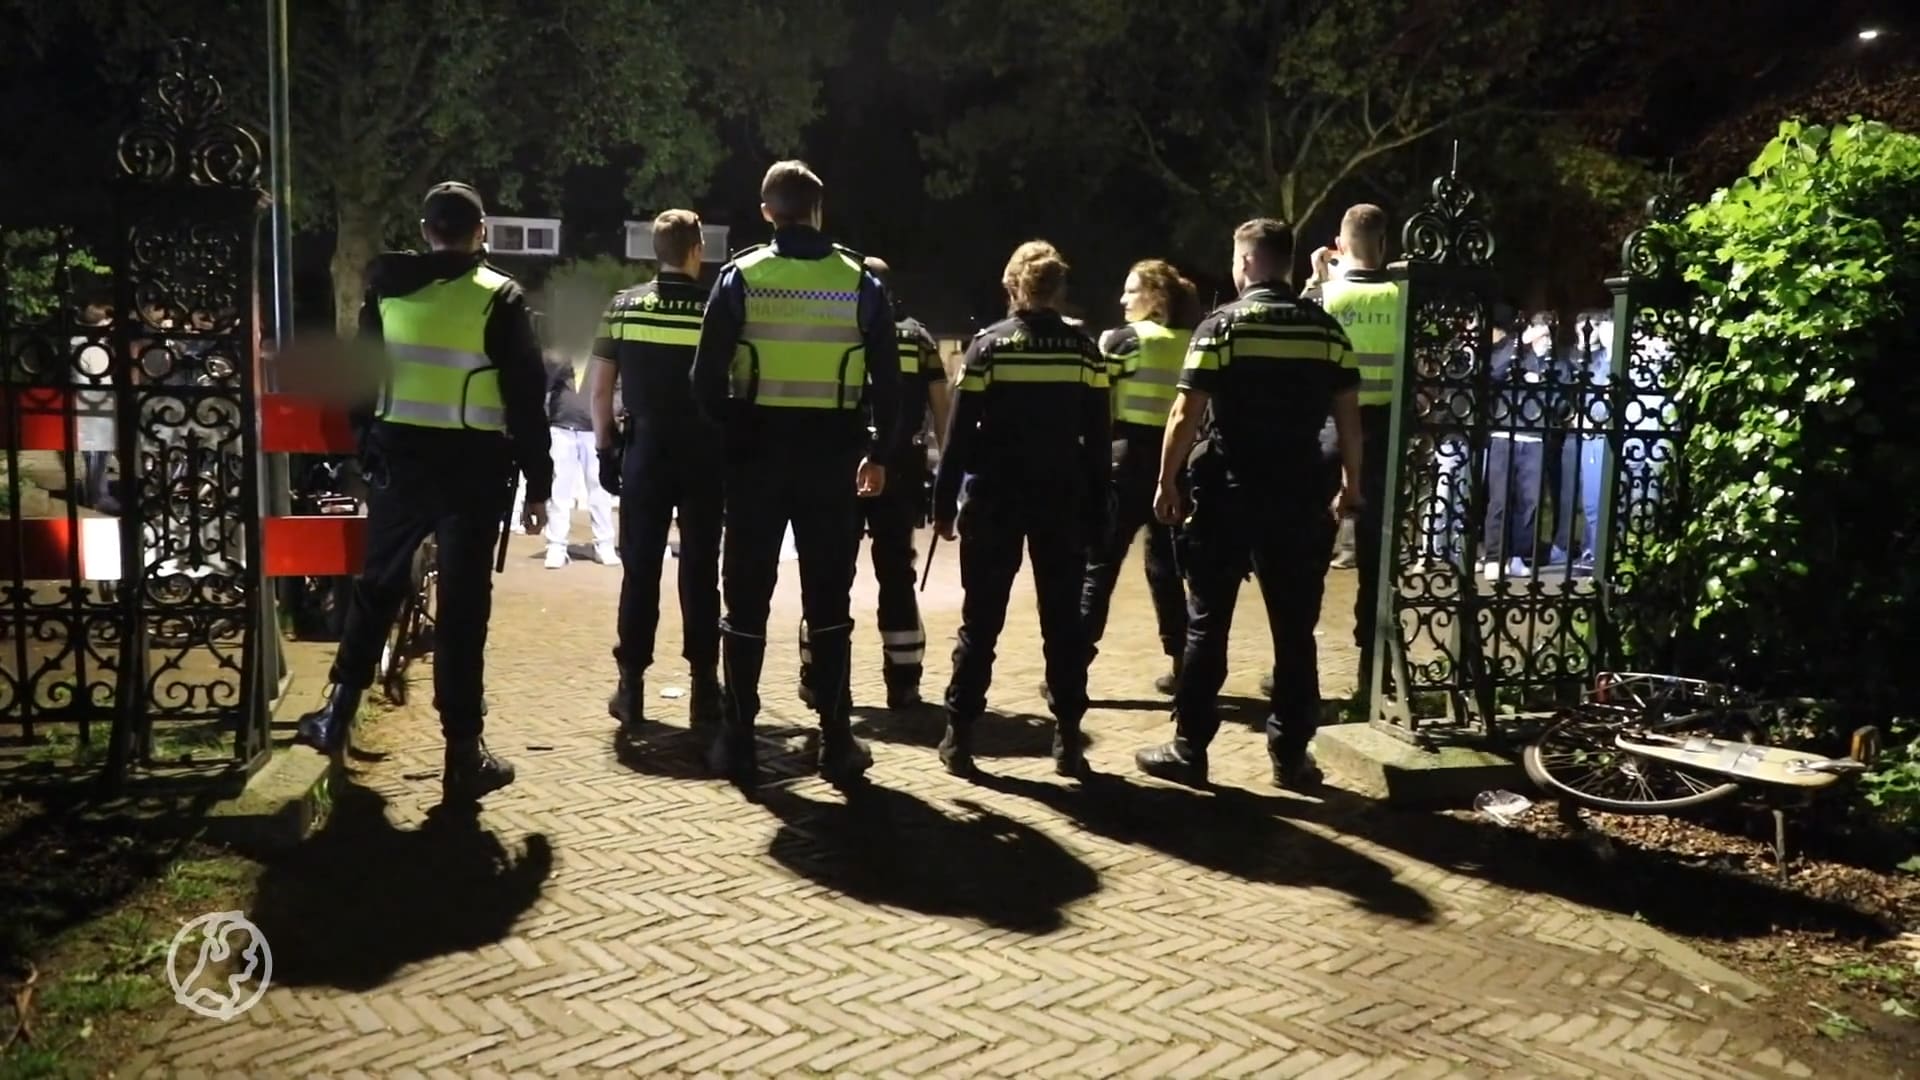 Koningsdag in Baarn ontsierd door rellende jongeren: 'Agenten met bakstenen bekogeld'